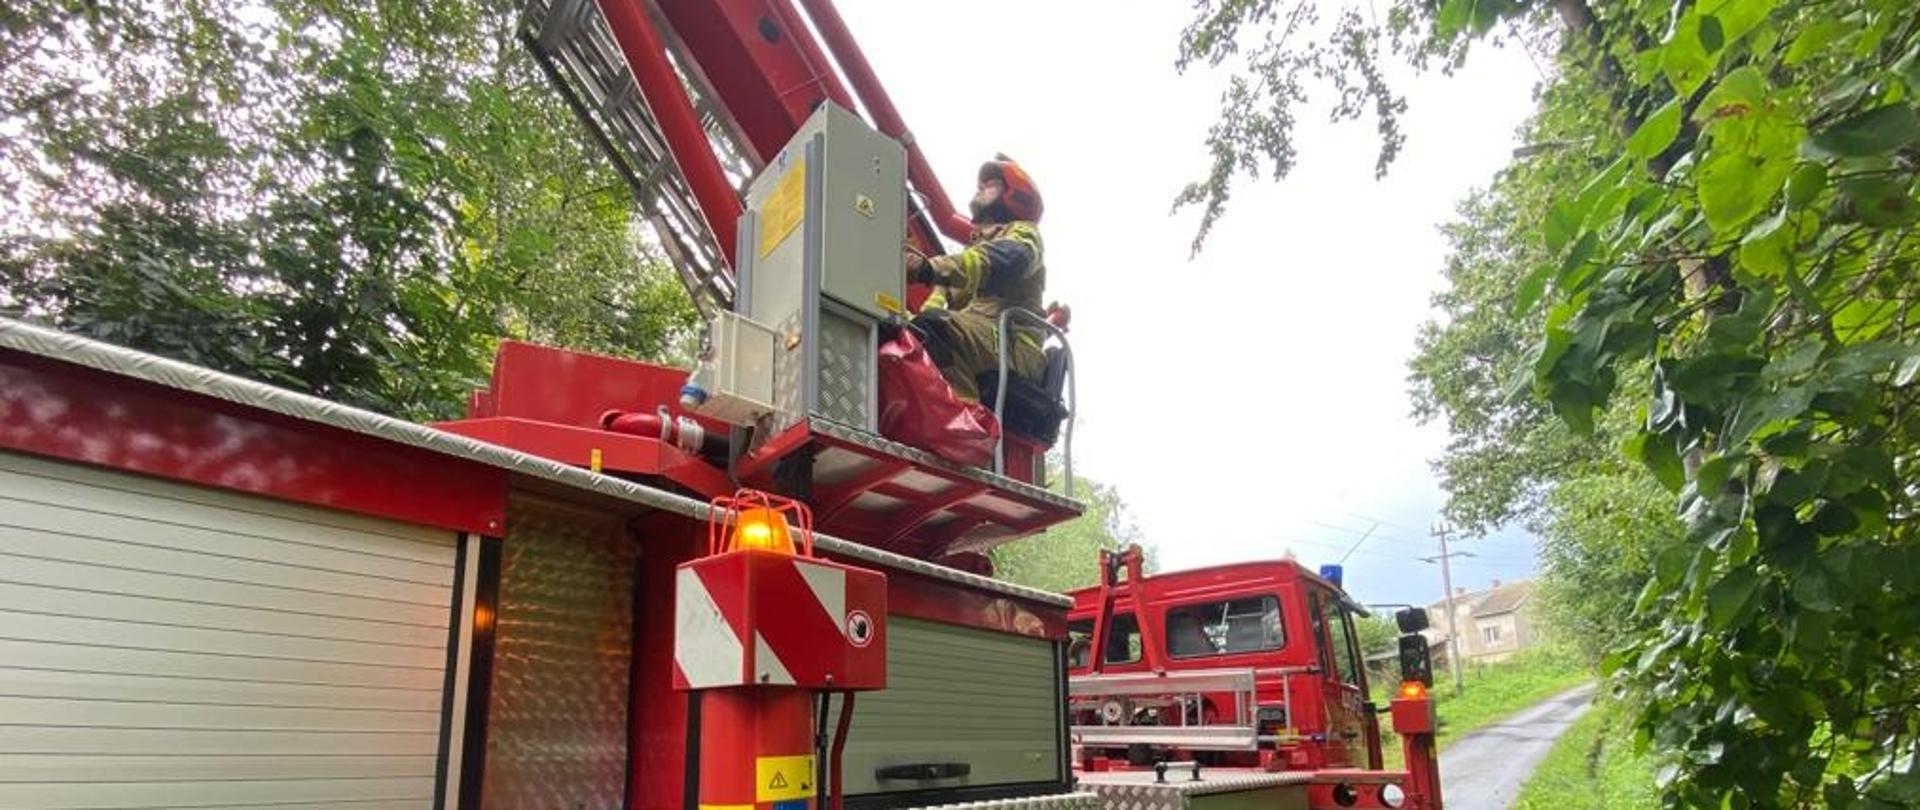 Na zdjęciu widoczny czerwony samochód specjalny pożarniczy podnośnik hydrauliczny i operator strażak w ubraniu pisakowym i czerwonym hełmie podczas akcji związanej z usuwaniem uszkodzonego drzewa przez wiatr.